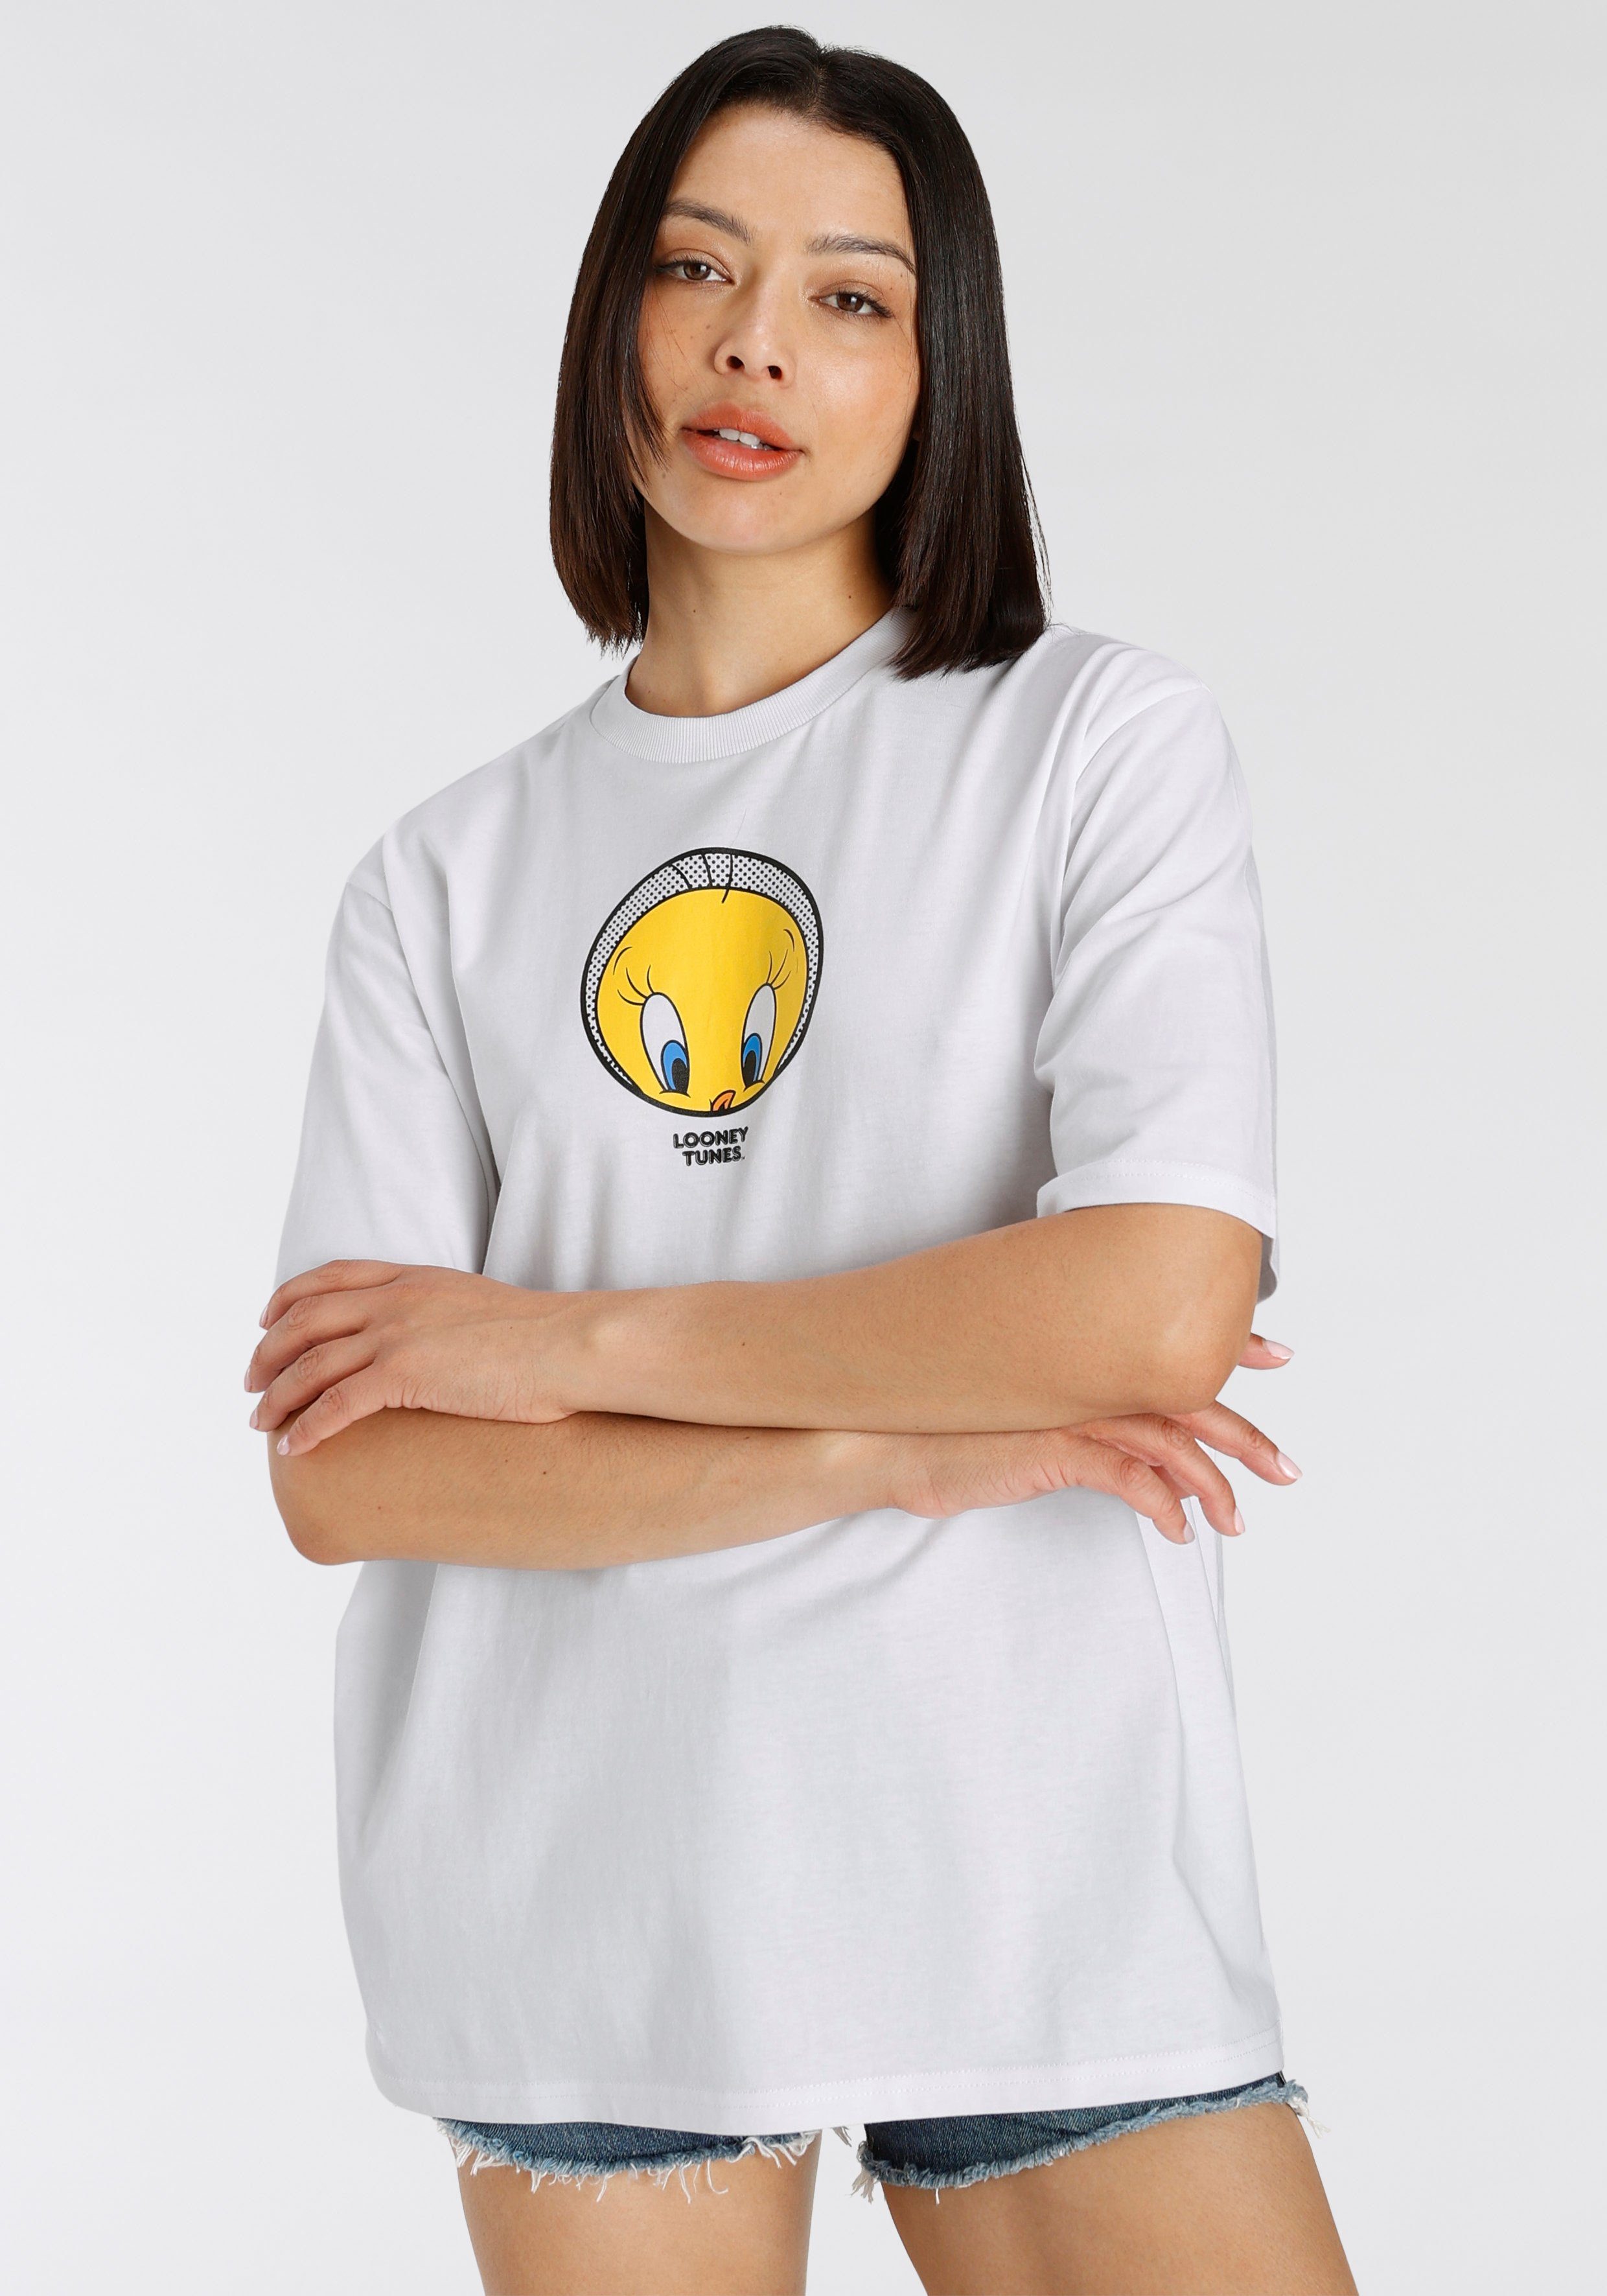 York Tweety New T-Shirt Capelli T-Shirt white